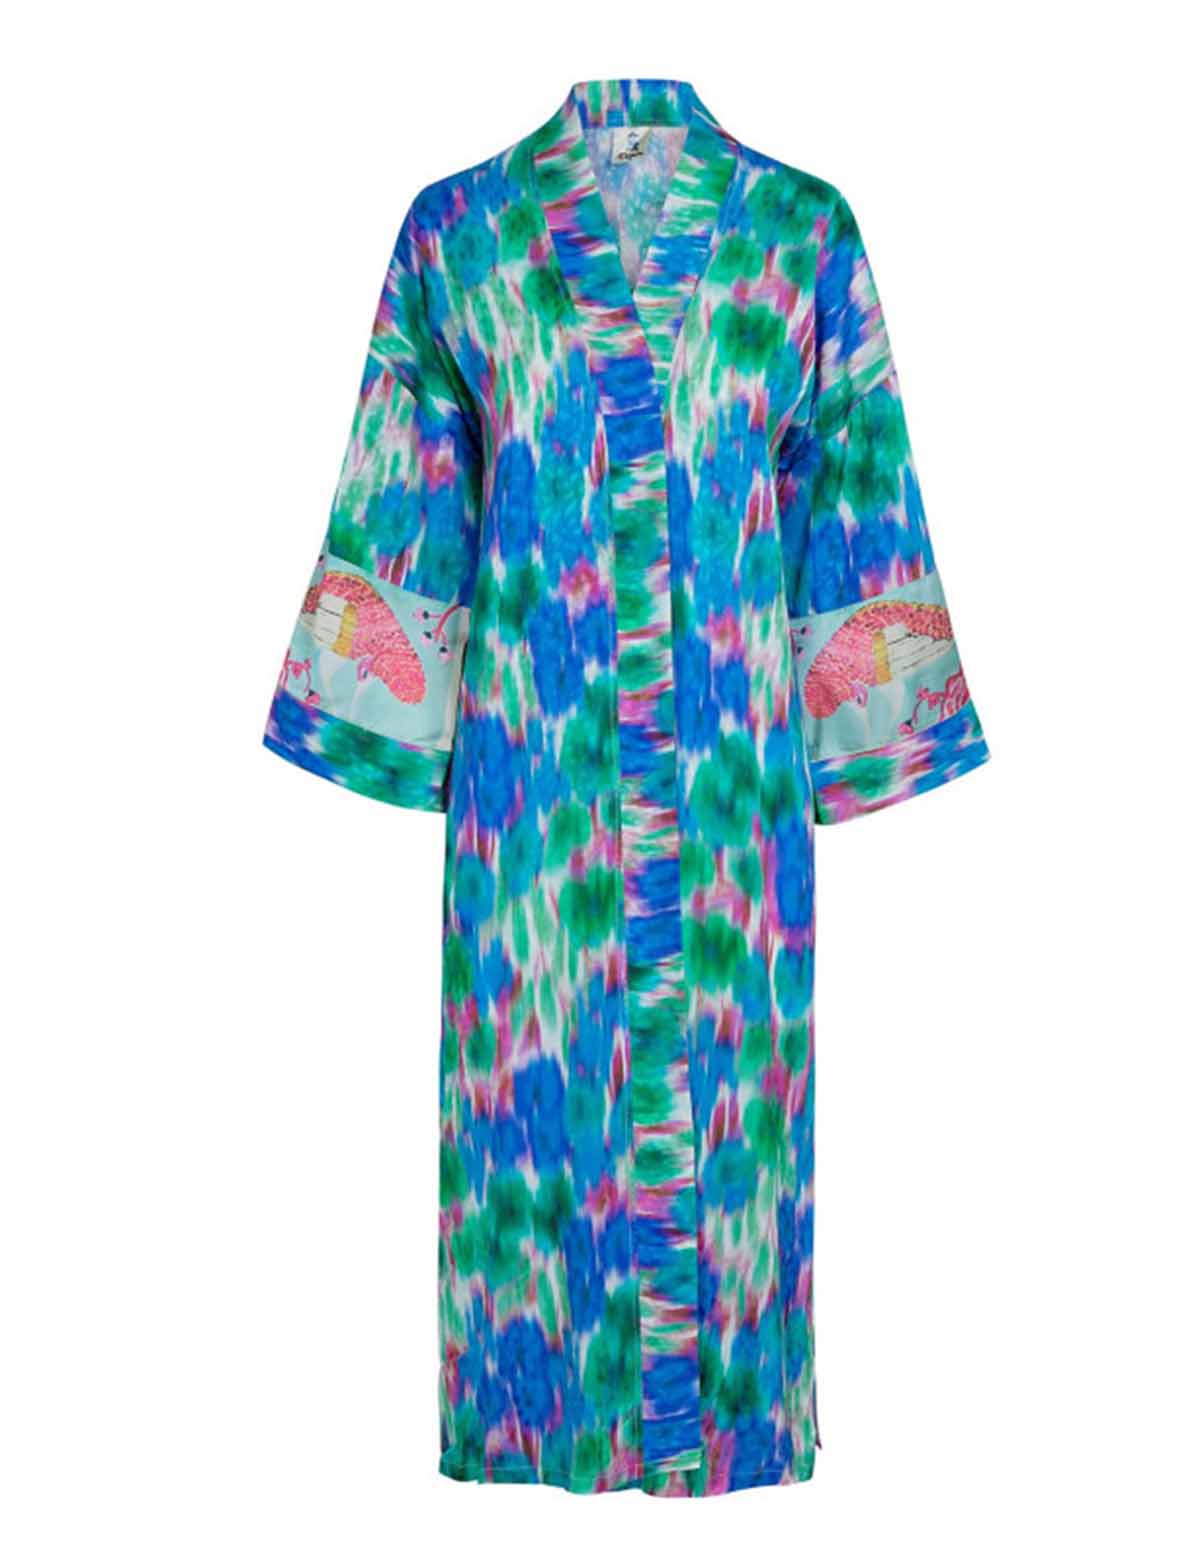 Kimono Garza 189 euros